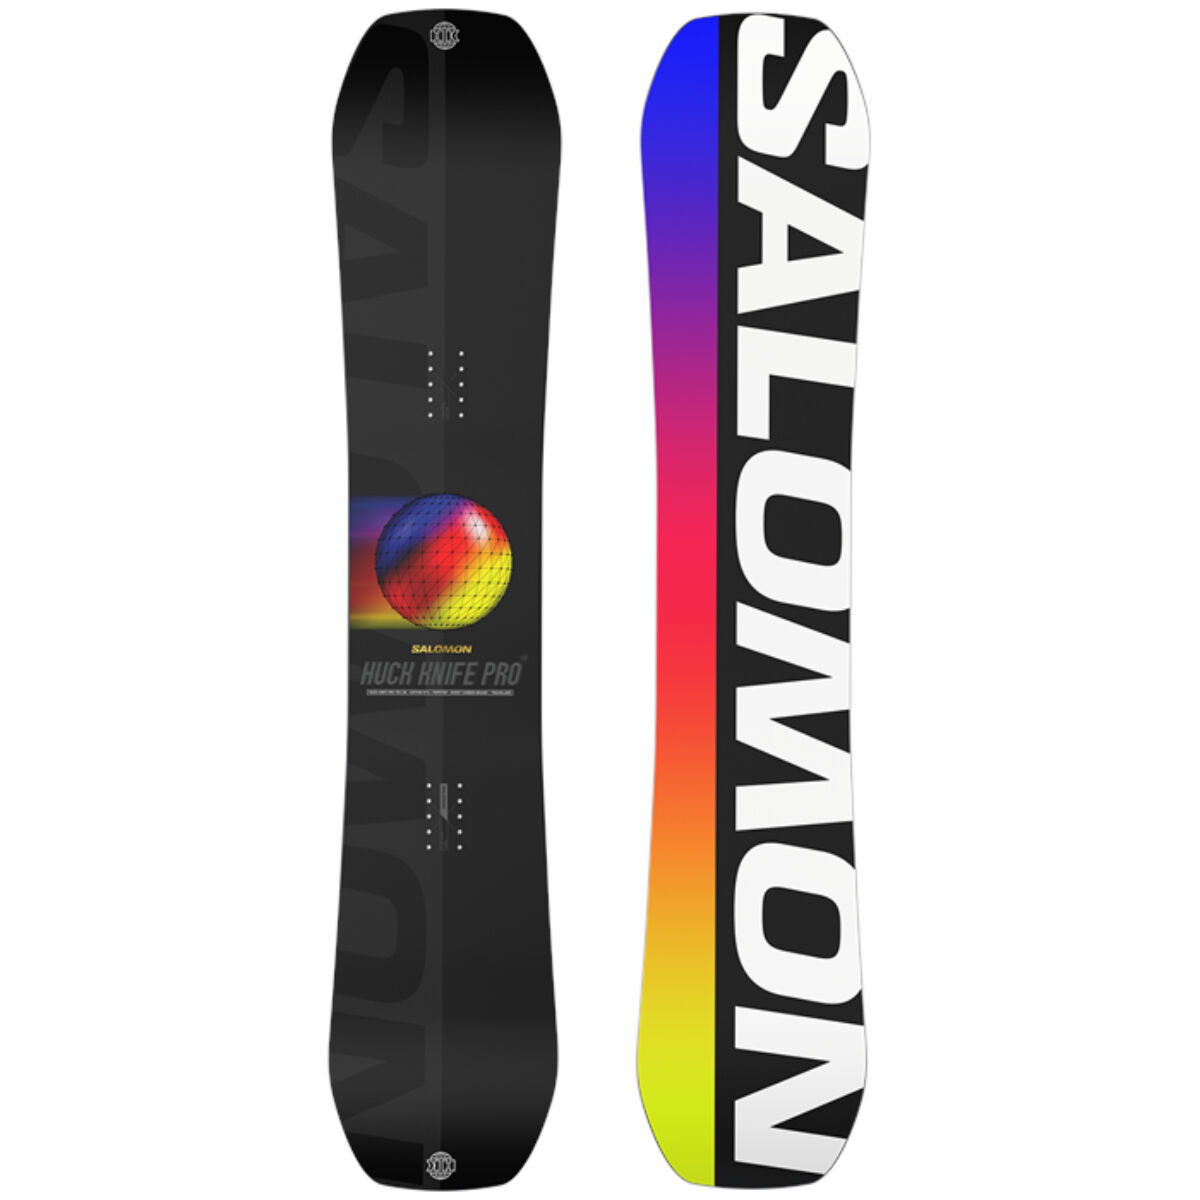 Salomon Huck Knife Pro Snowboard | Christy Sports